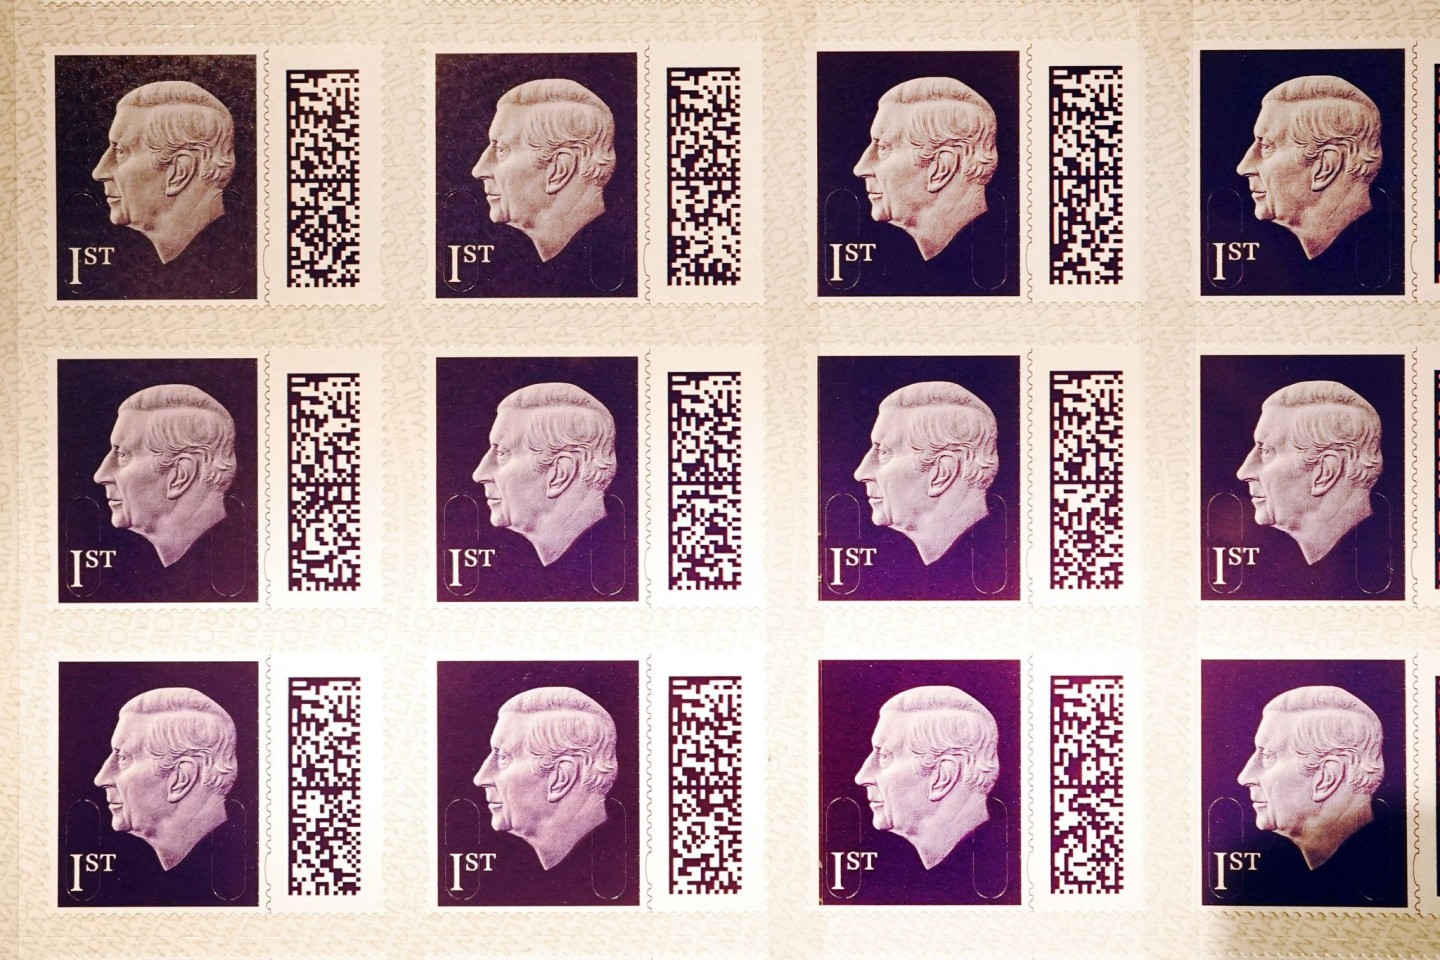 Die Briefmarke mit dem Antlitz von König Charles III. kommt im Laufe des Jahres in Umlauf.